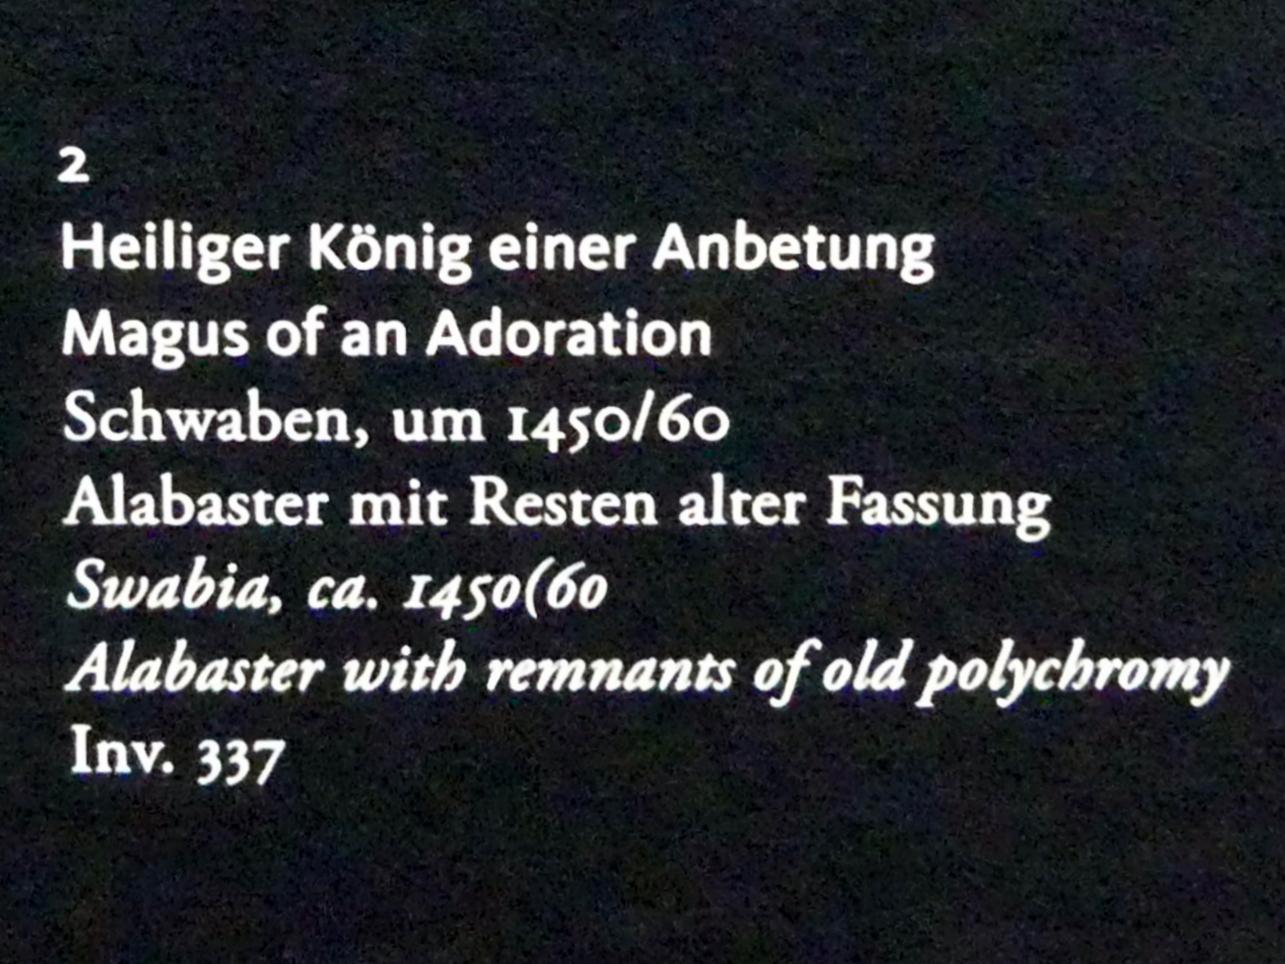 Heiliger König einer Anbetung, Frankfurt am Main, Liebieghaus Skulpturensammlung, Mittelalter 3 - große Kunst im kleinen Format, um 1450–1460, Bild 3/3